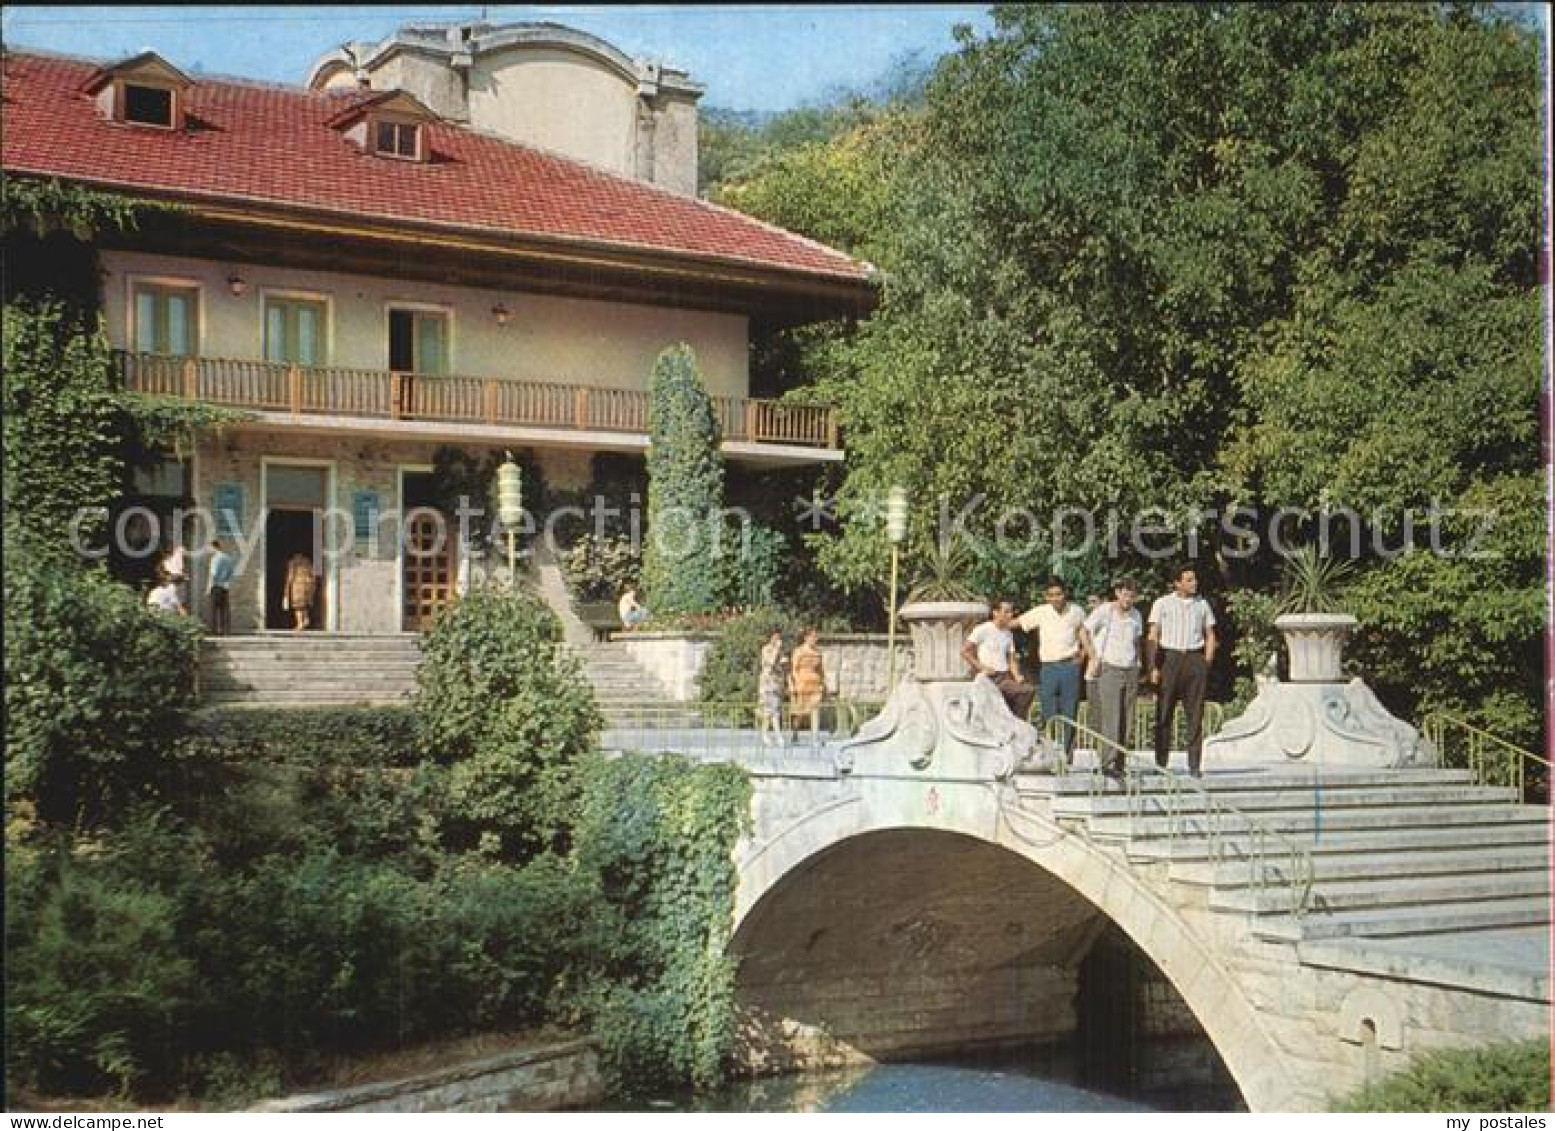 72532976 Plevene Park Kajlaka Hotel Balkantourist Plewen Bulgarien - Bulgaria